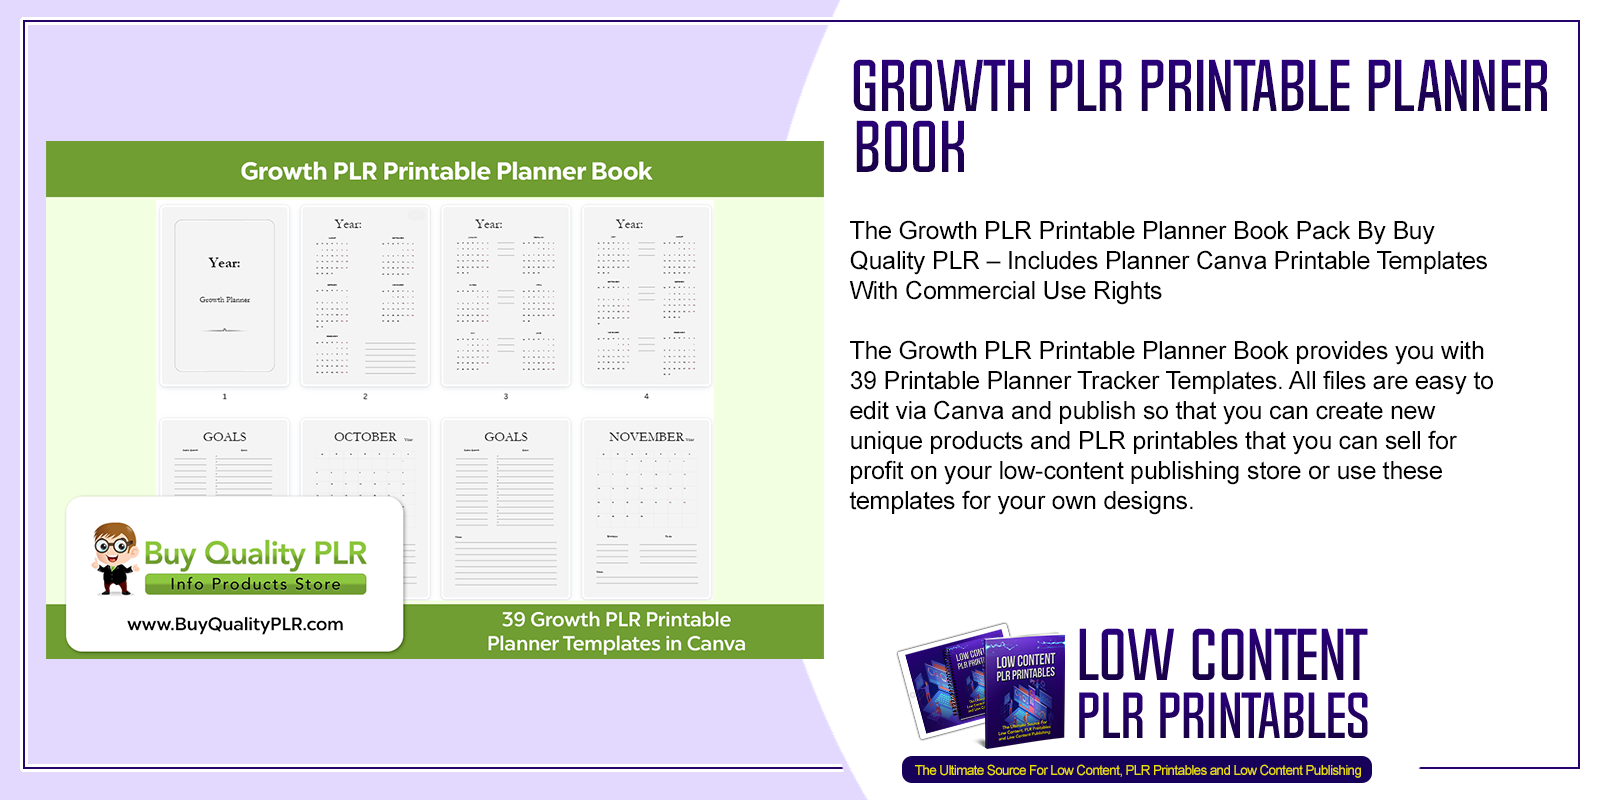 Growth PLR Printable Planner Book